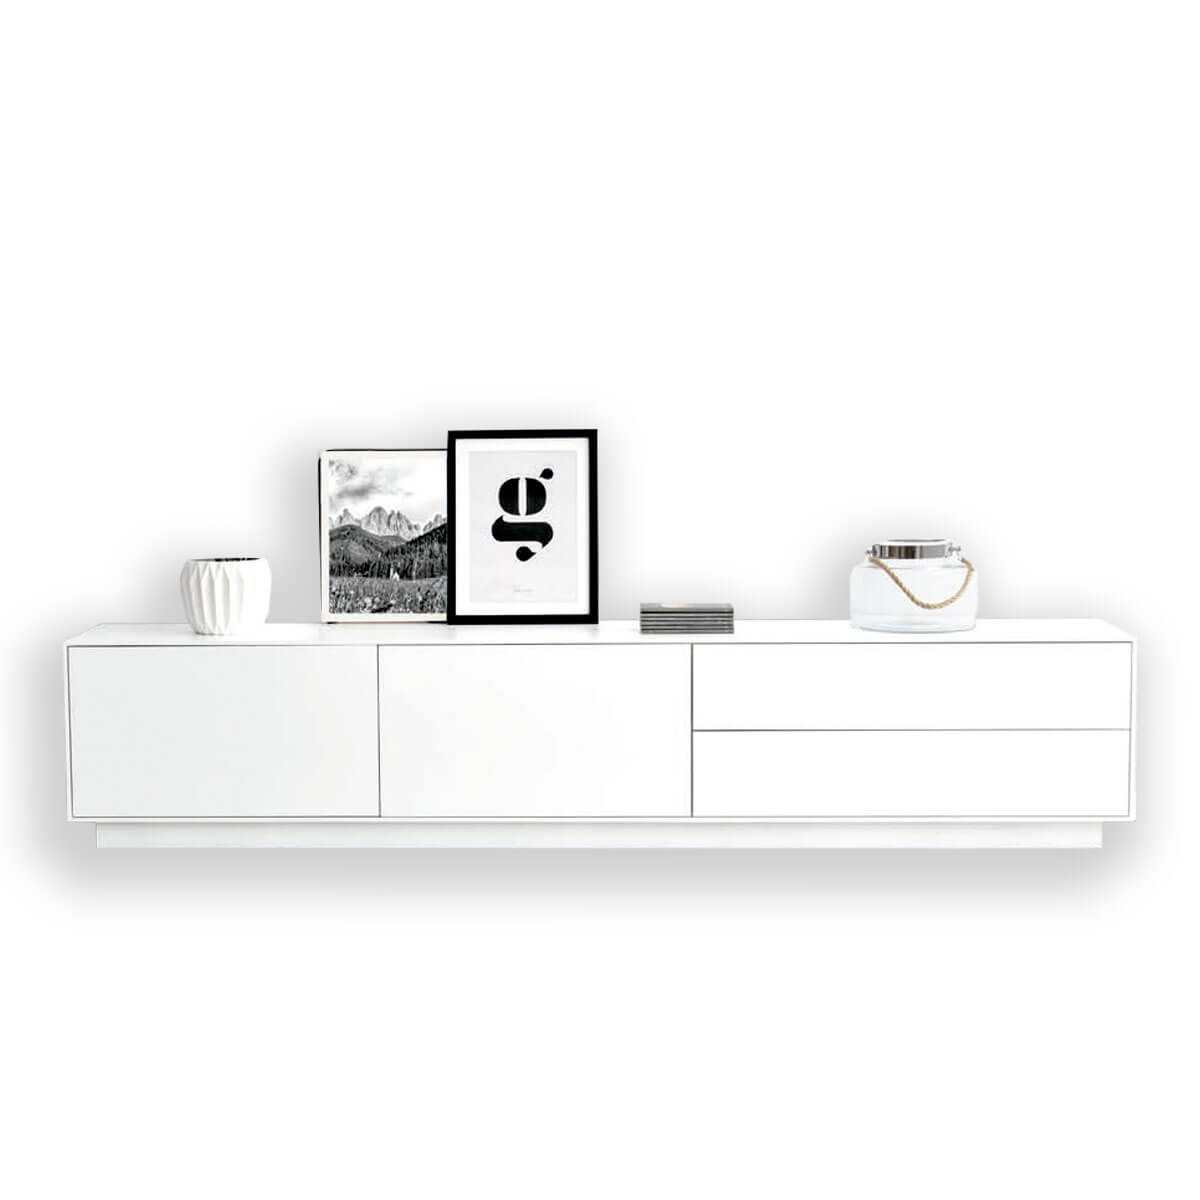 Mueble tv chapa madera natural y blanco - Comprar muebles tv - Artikalia